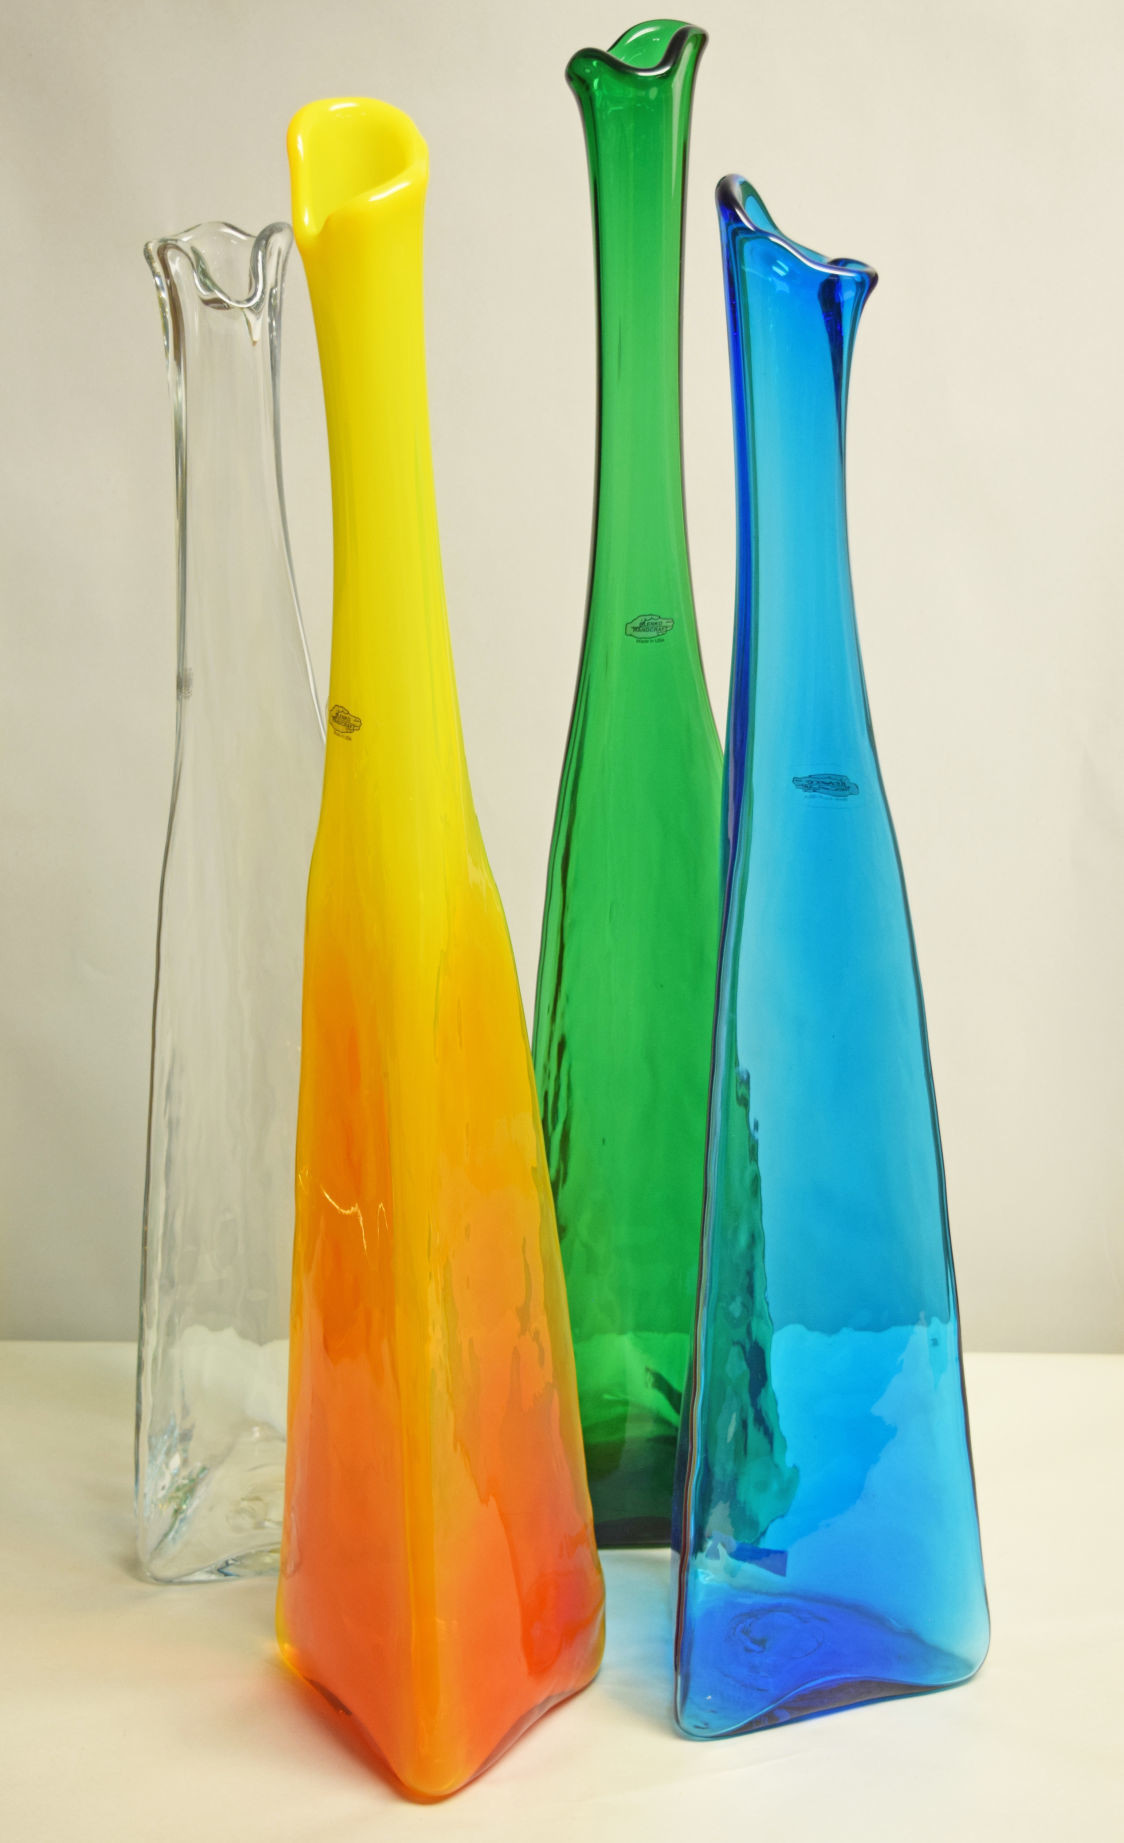 23 Amazing Blue John Vases for Sale 2024 free download blue john vases for sale of wv design team mid century love began with blenko glass home intended for 20180923 gm design blenko3